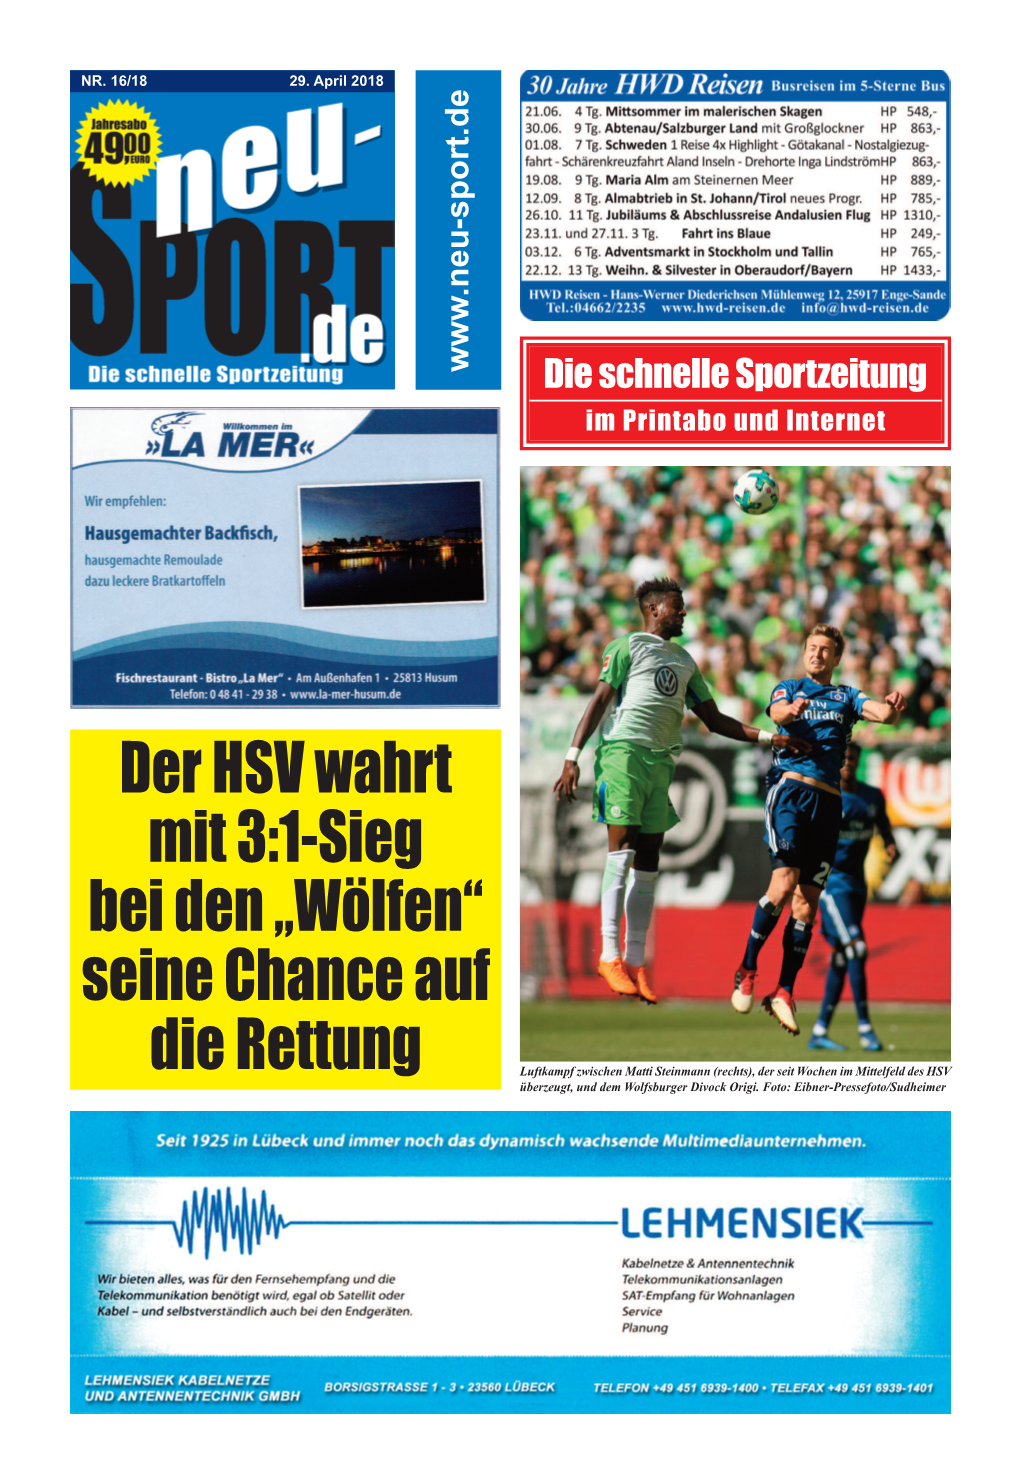 Online-Sportzeitung Für Den Norden 16 18